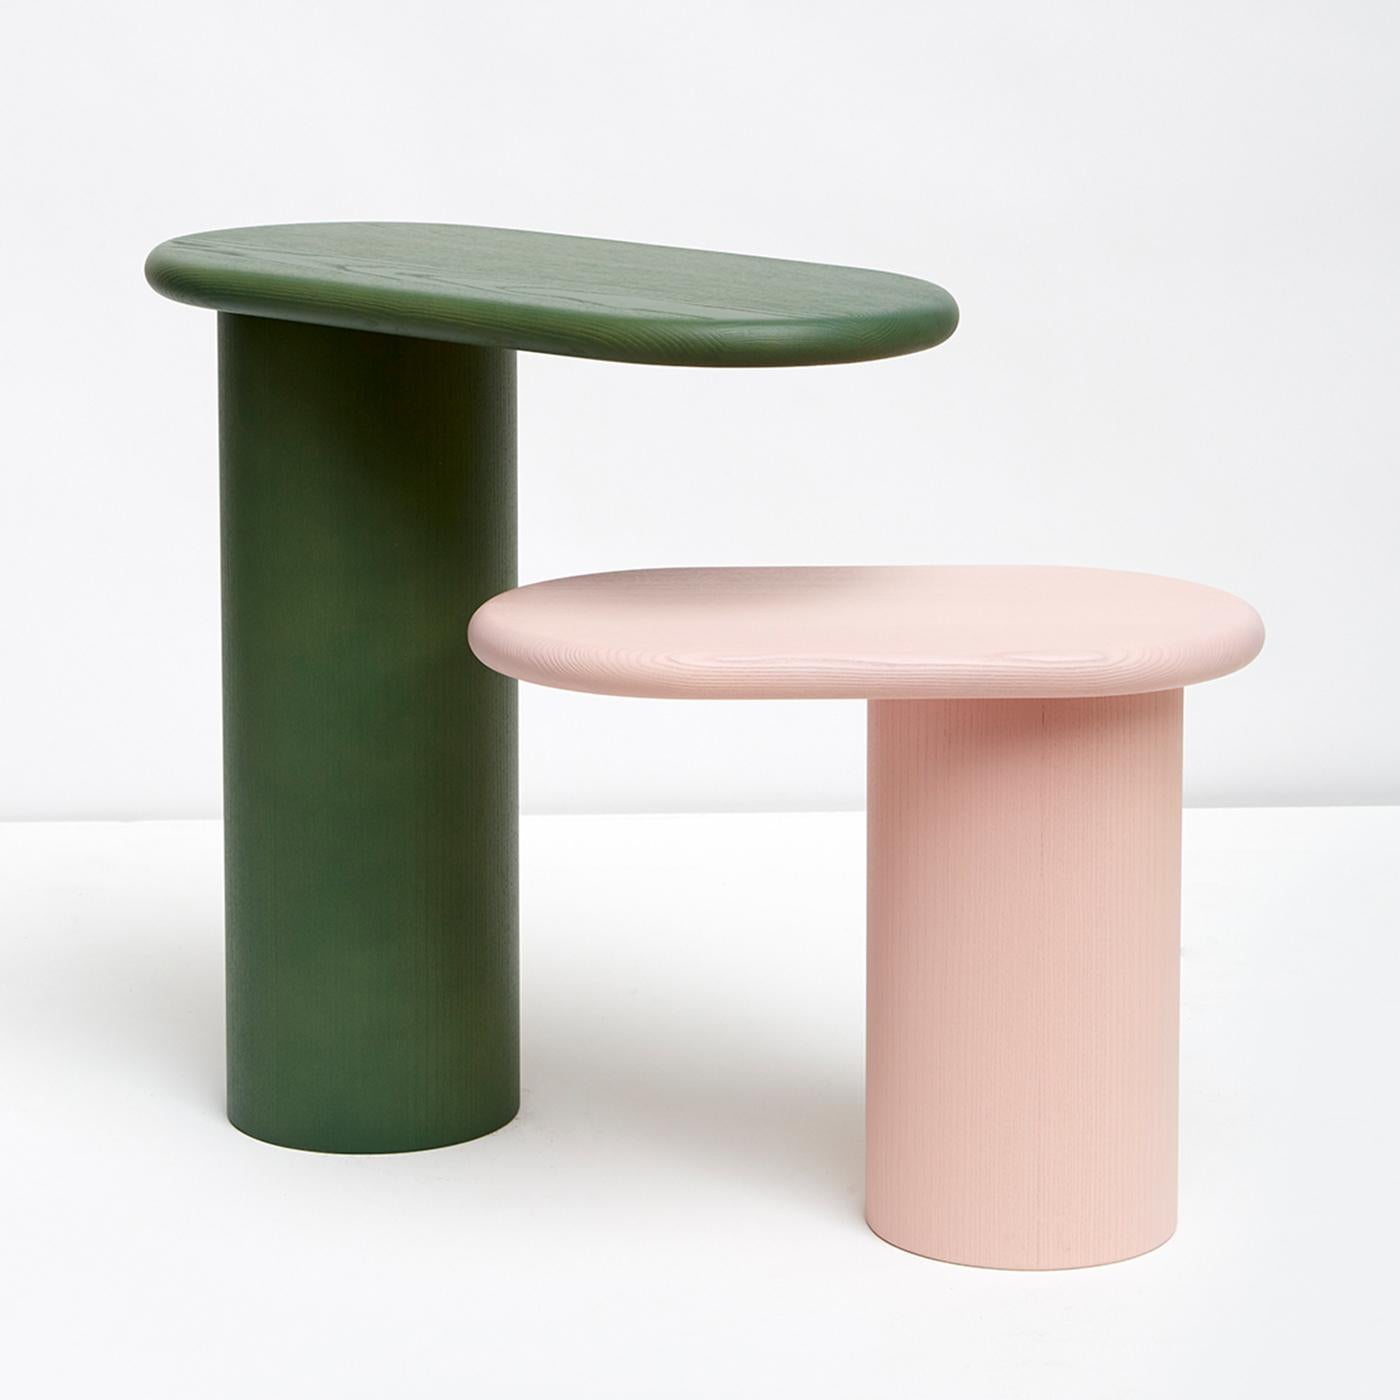 Avec ses courbes attrayantes et sa forme épurée, cette table d'appoint incarne l'élégance simple grâce à un design minimal qui se caractérise par une base colonne robuste et un plateau ovale allongé en porte-à-faux, une caractéristique qui a donné